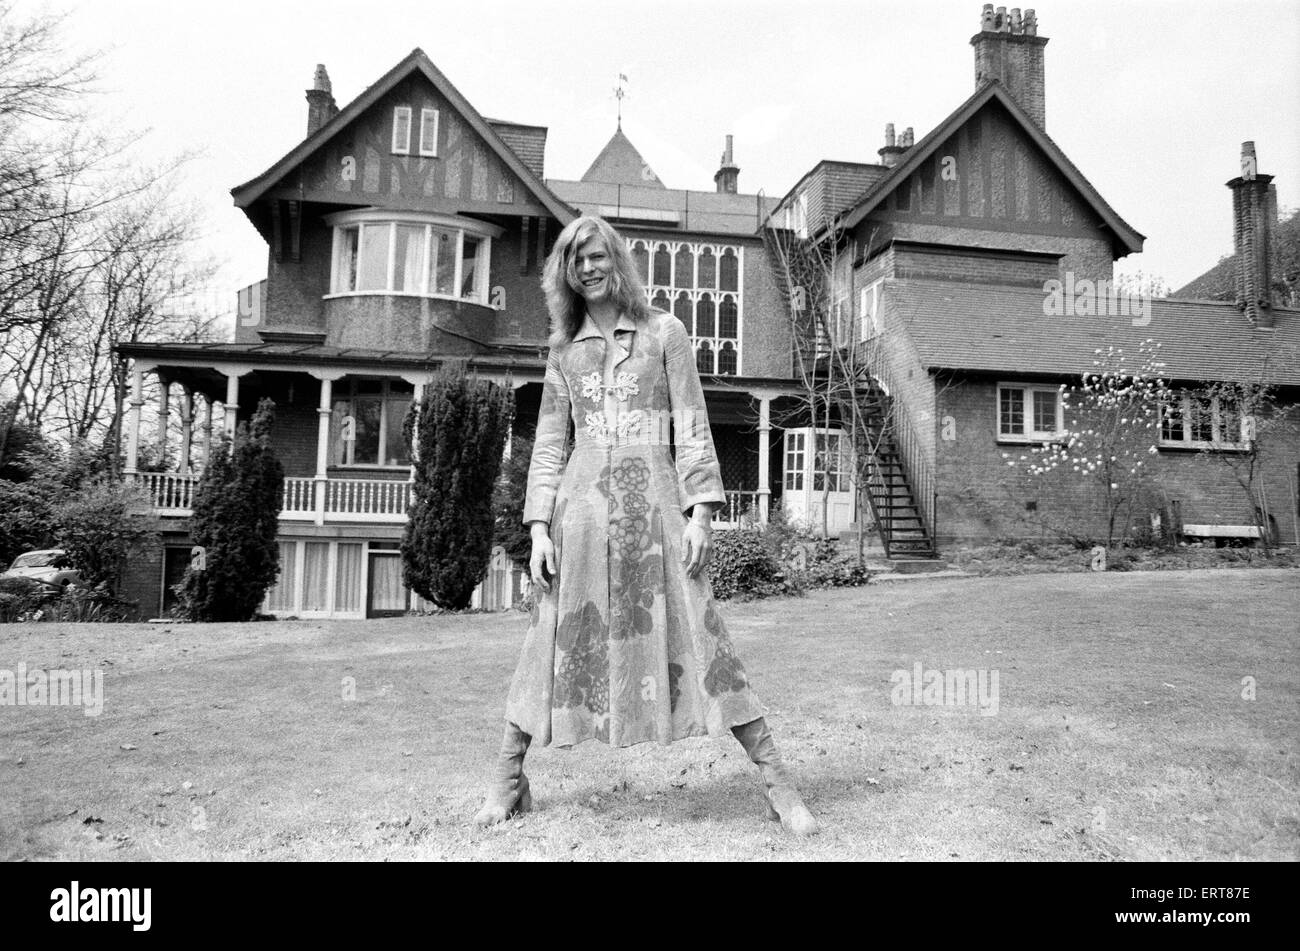 David Bowie at his home, Haddon Hall, at Beckenham, Kent, 20th April 1971. Stock Photo